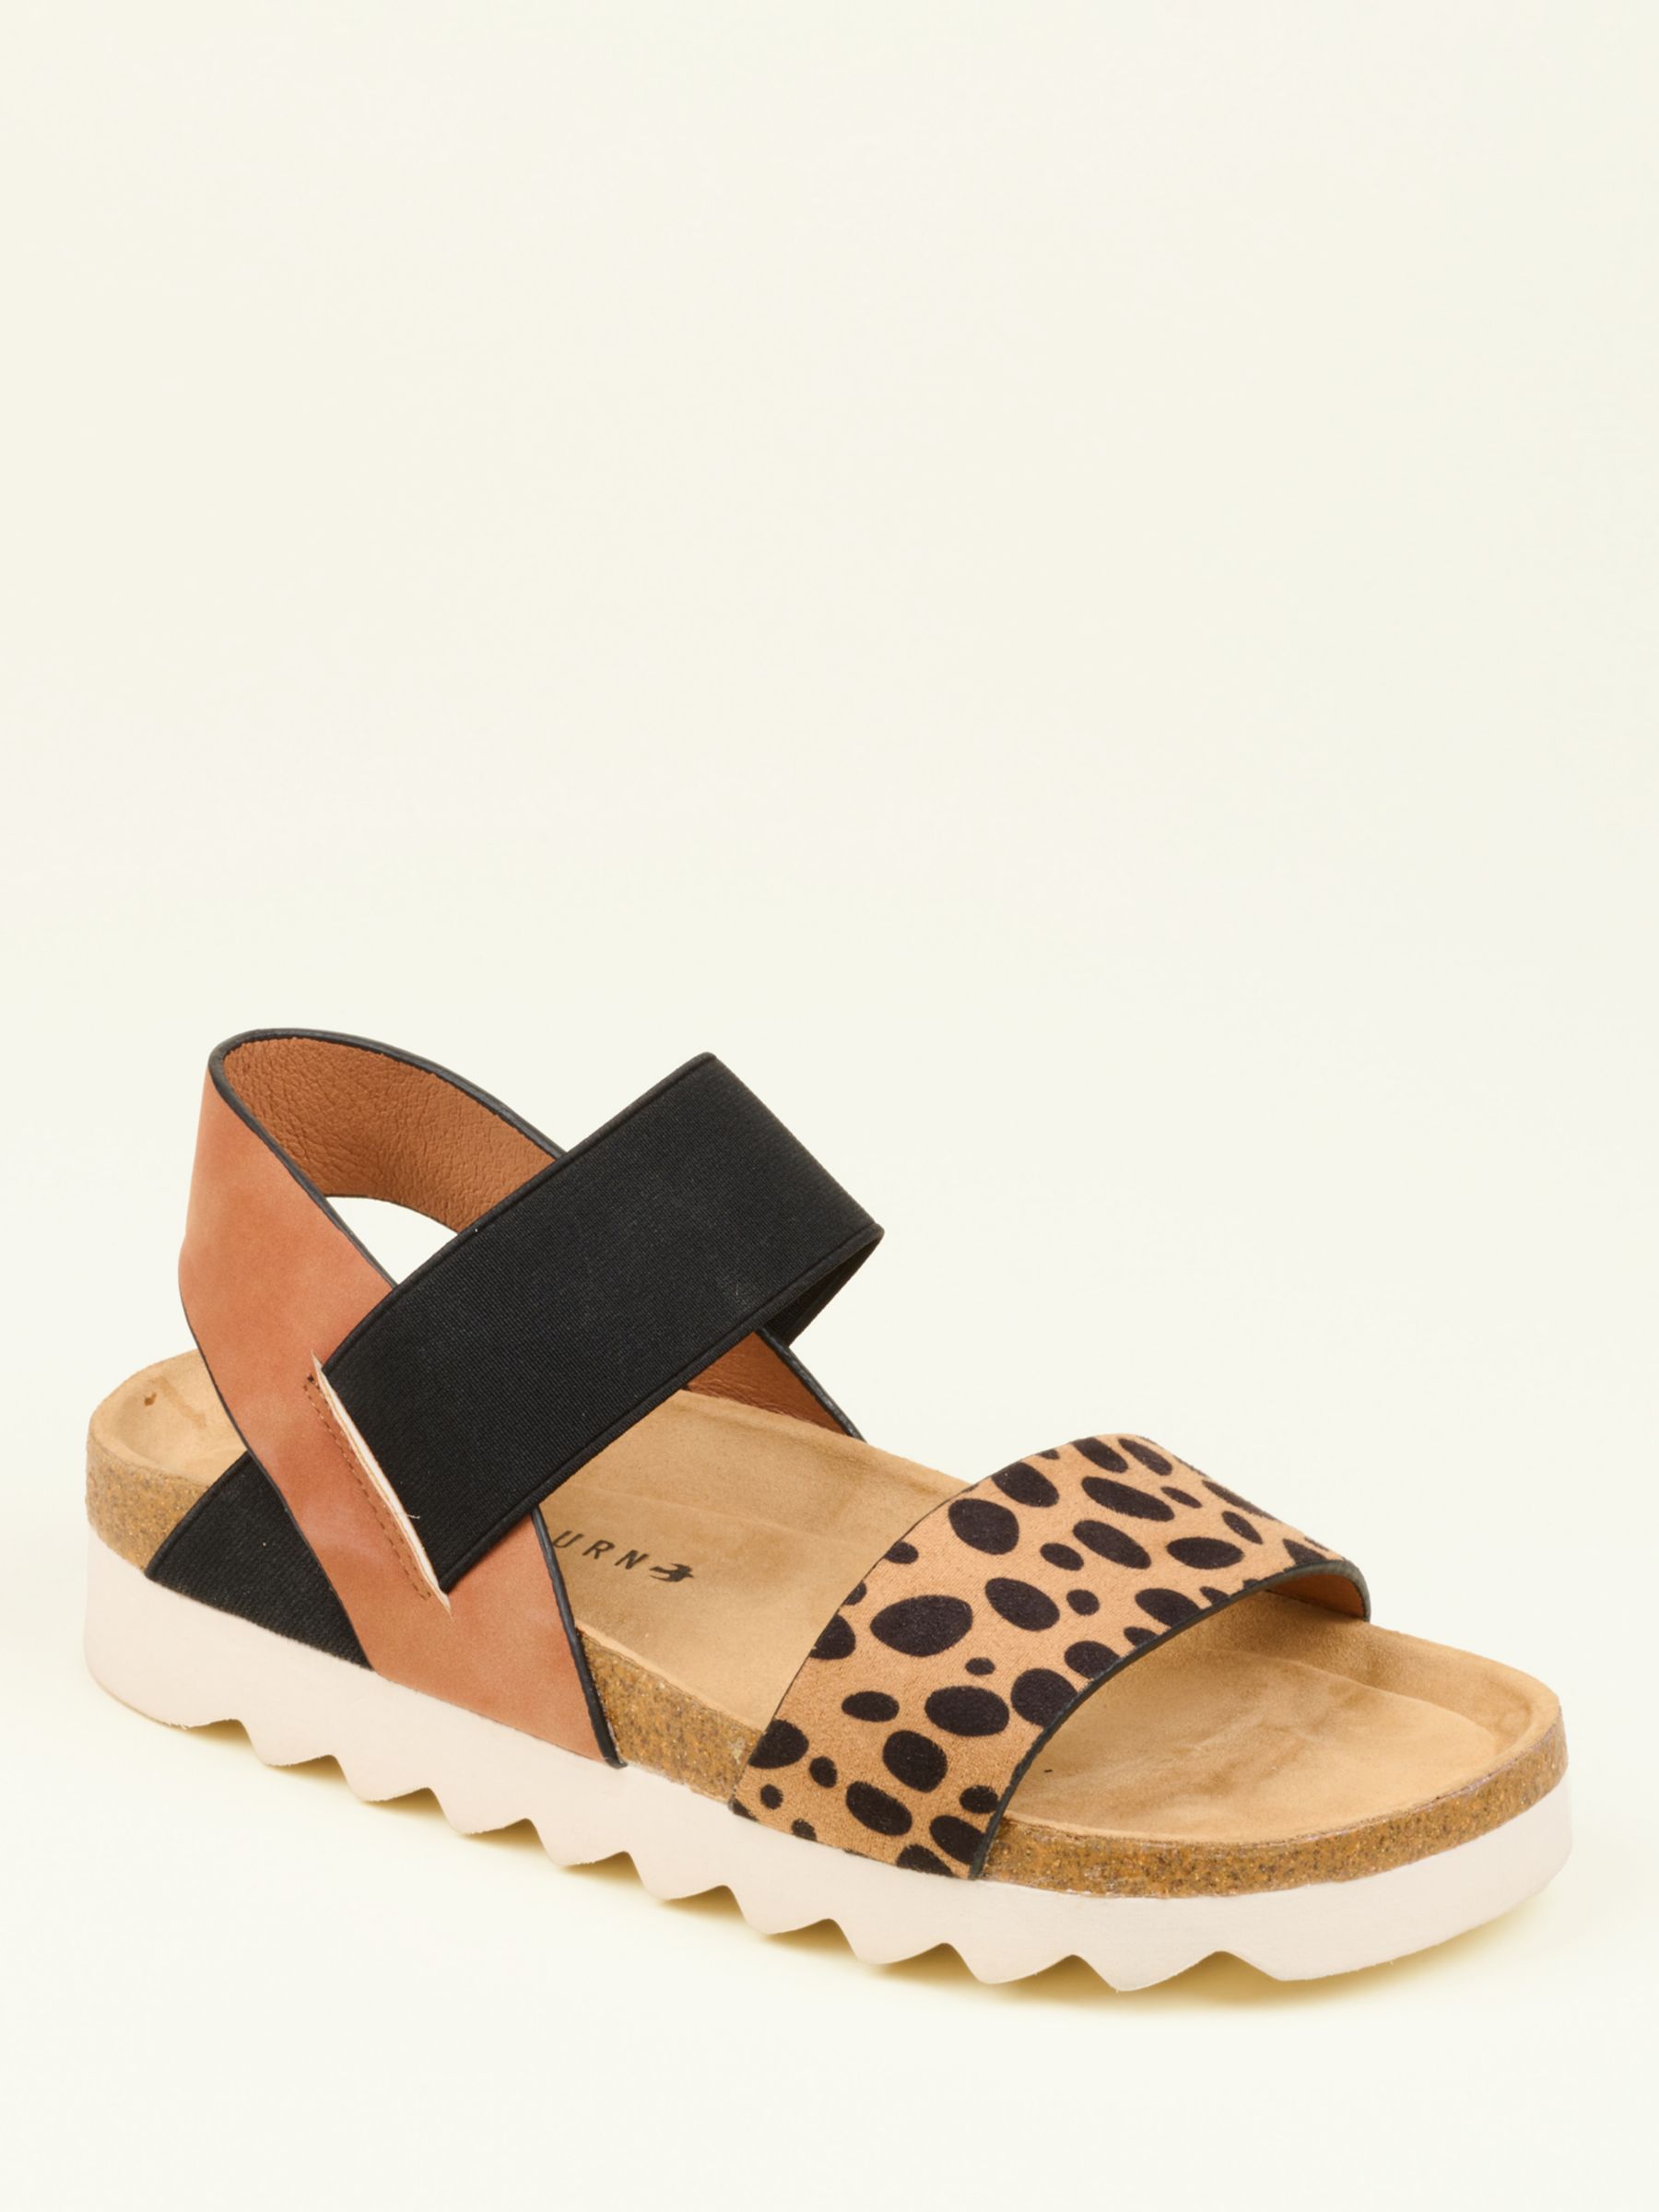 Buy Brakeburn Safari Sandals, Multi Online at johnlewis.com